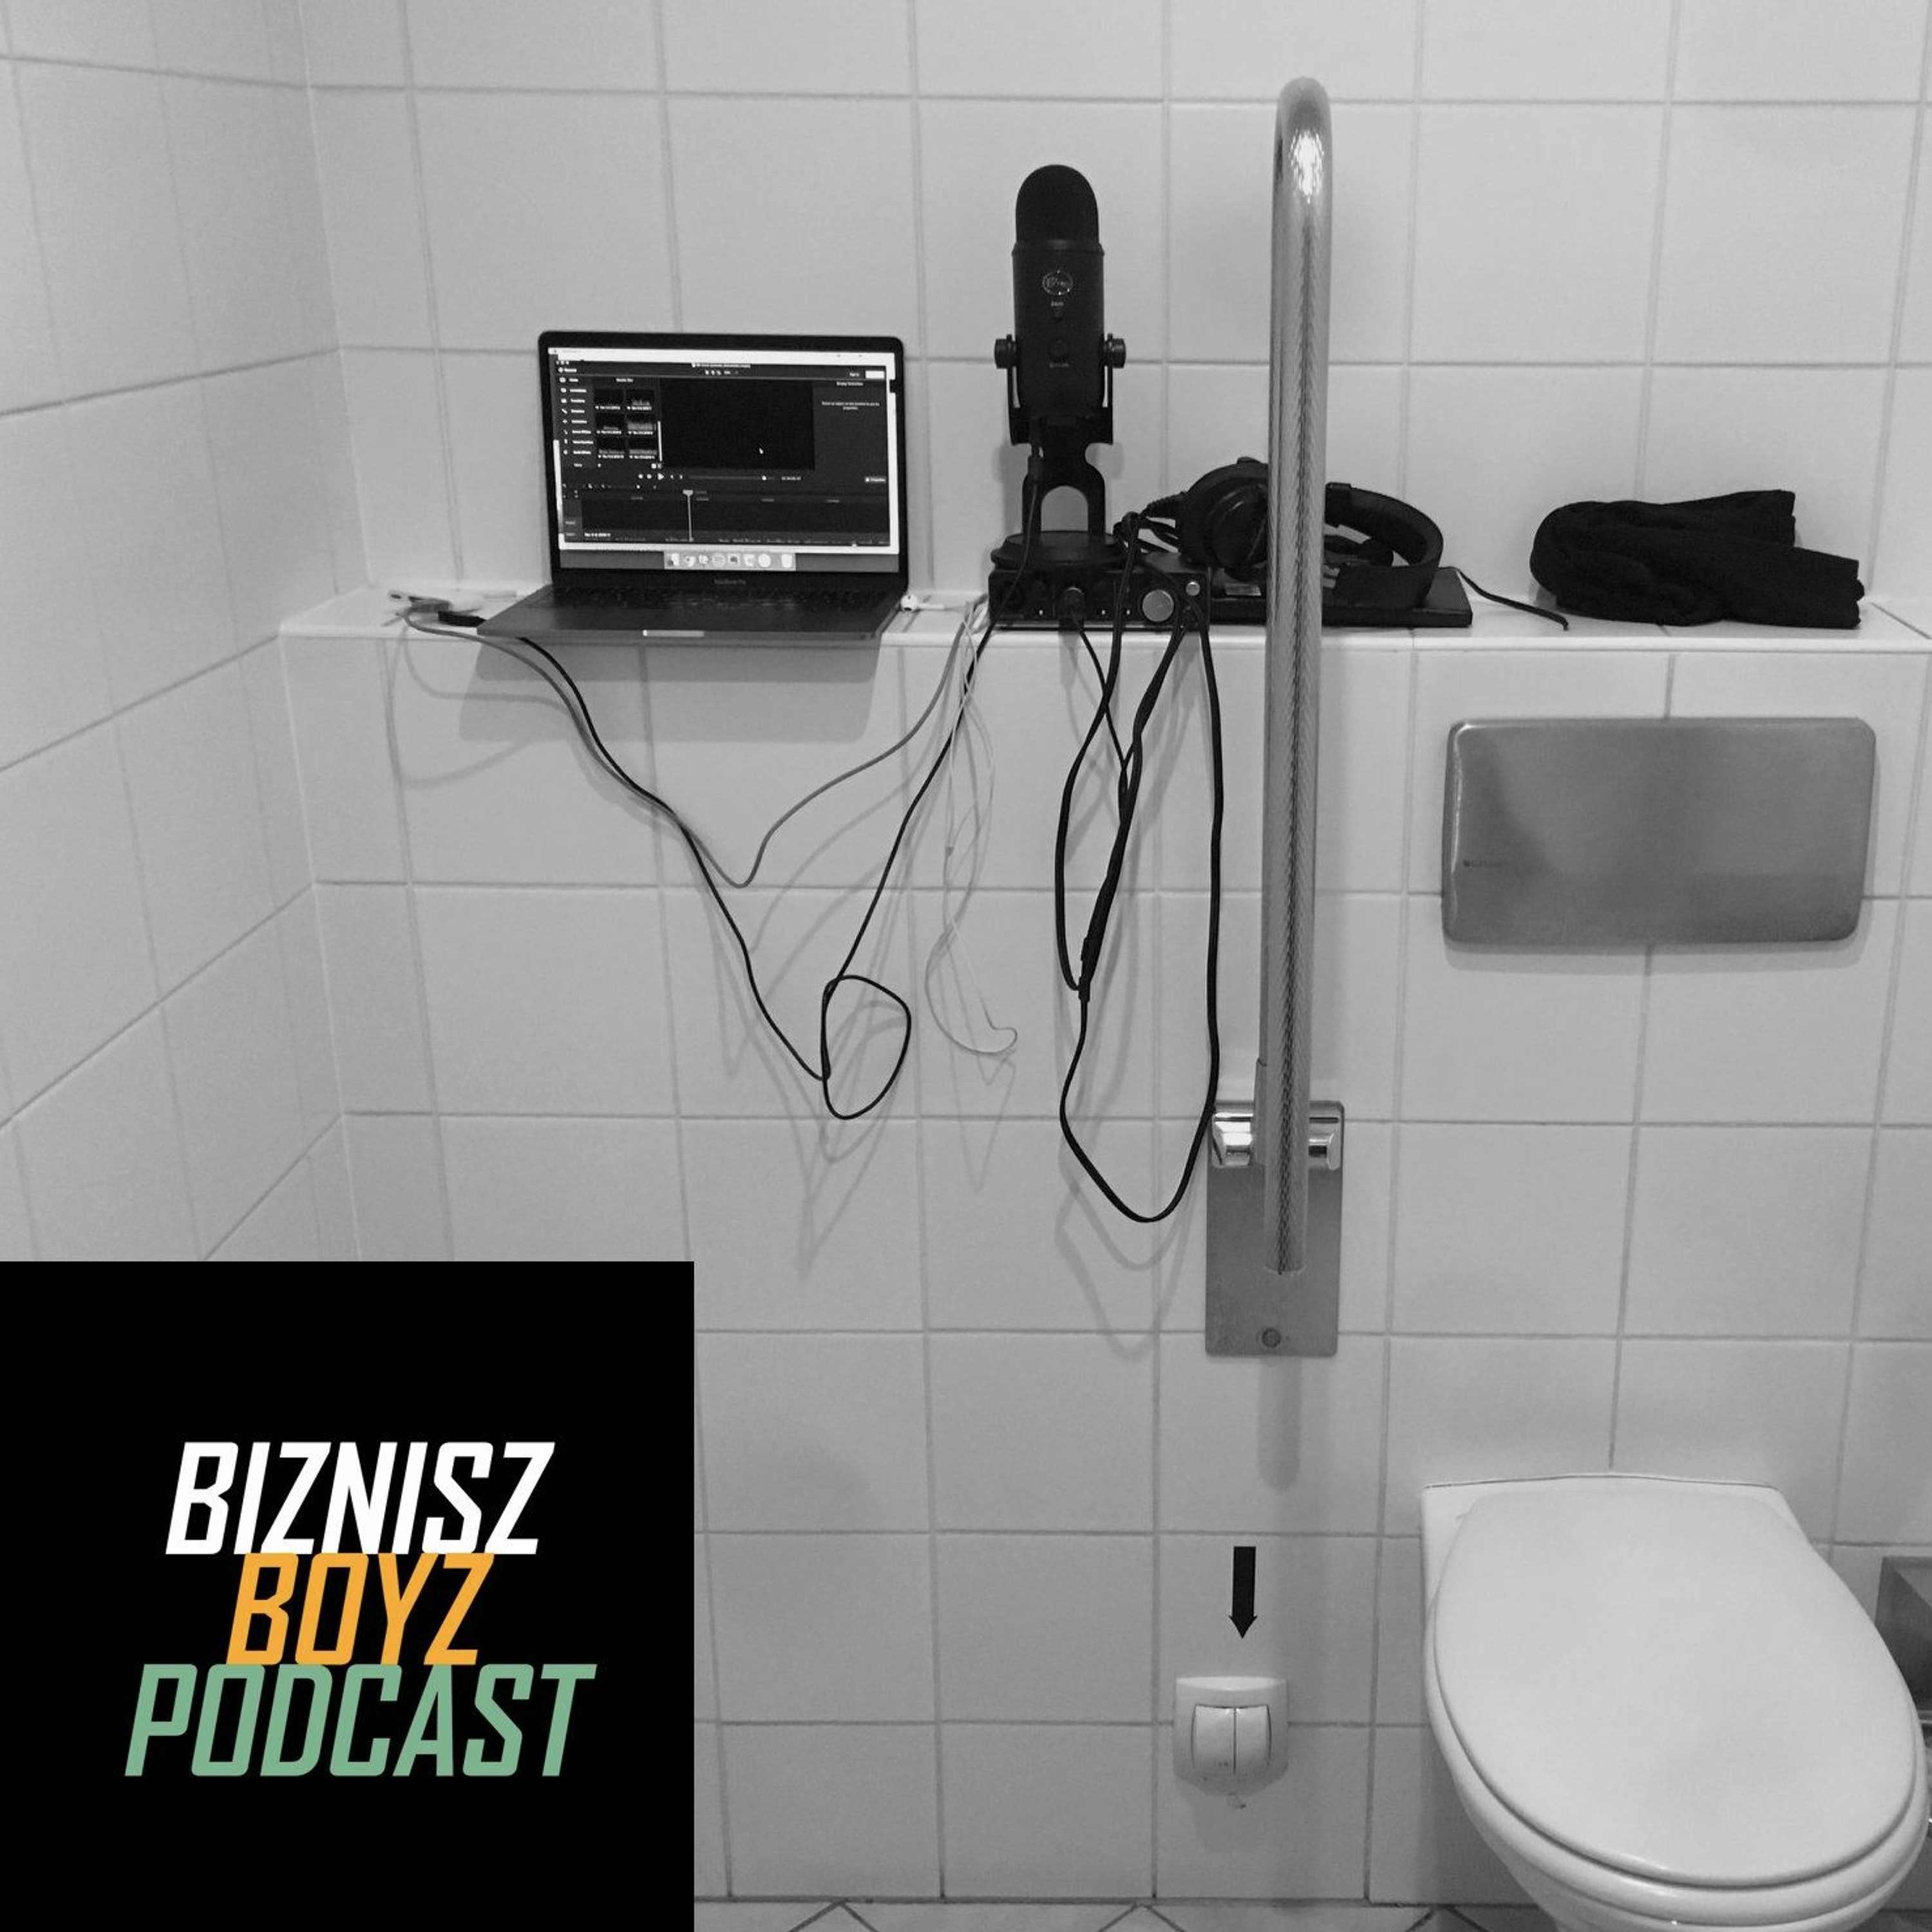 Extra - Az Ideális Podcast Felszerelés (Mikrofon Demóval) | Tomitól | Biznisz Boyz Podcast